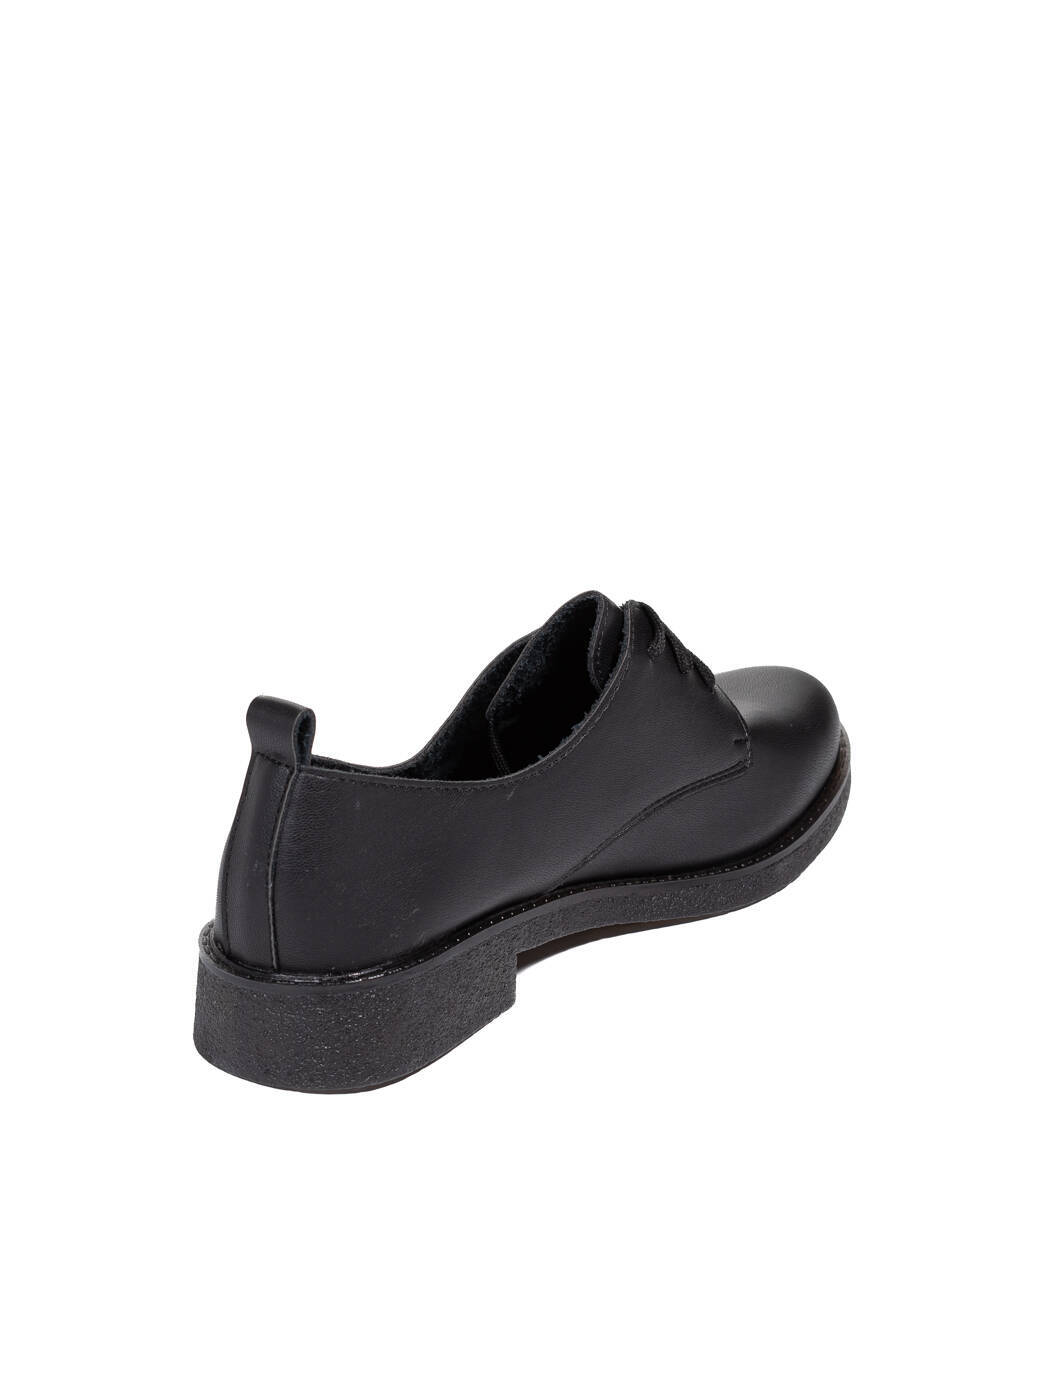 Туфли Oxfords женские черные экокожа каблук устойчивый демисезон вид 0